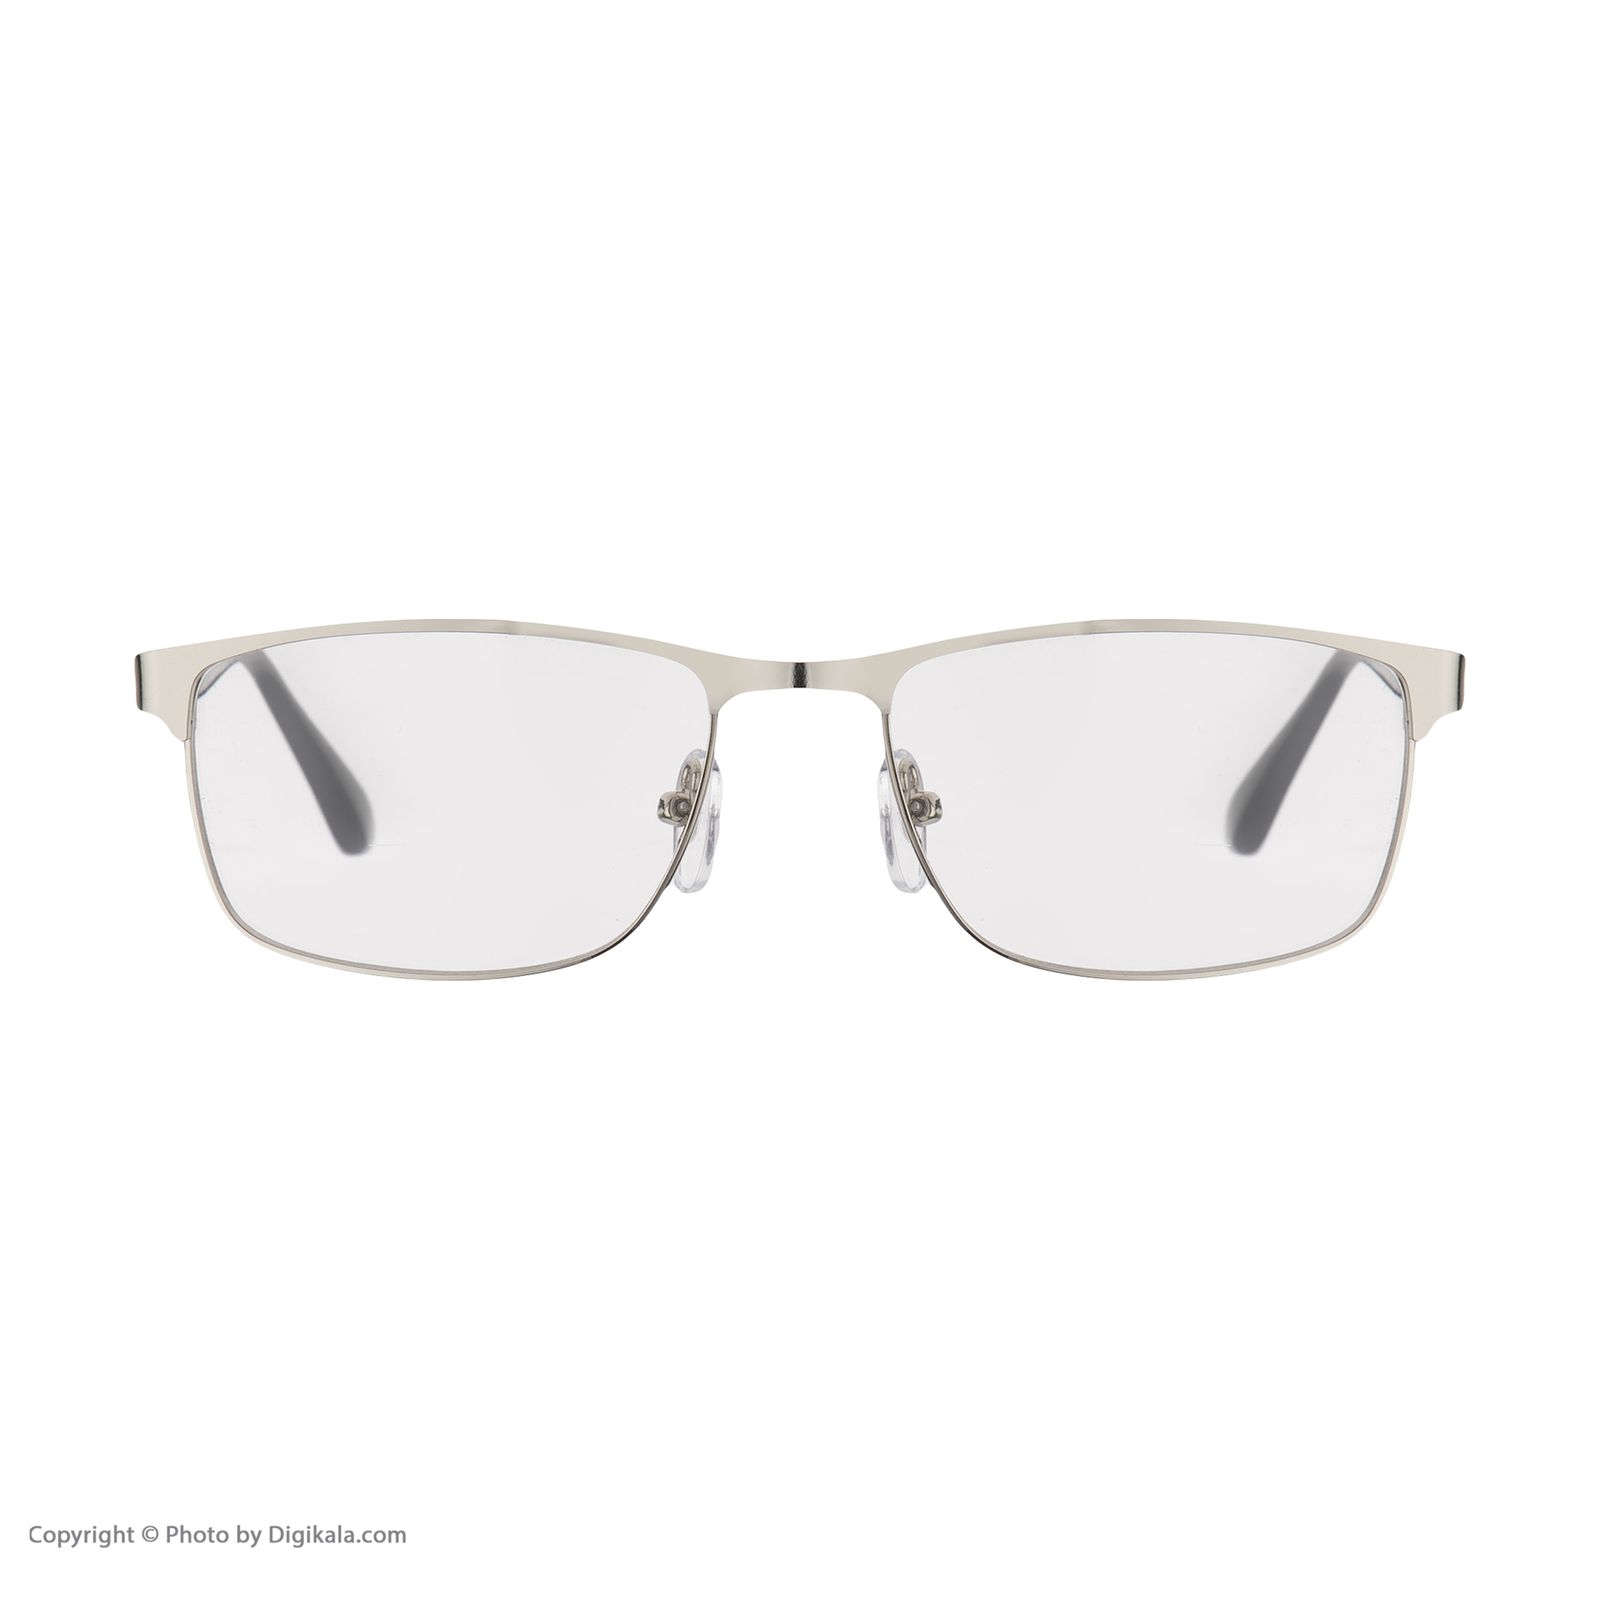 فریم عینک طبی امپریو آرمانی مدل 8986 -  - 5